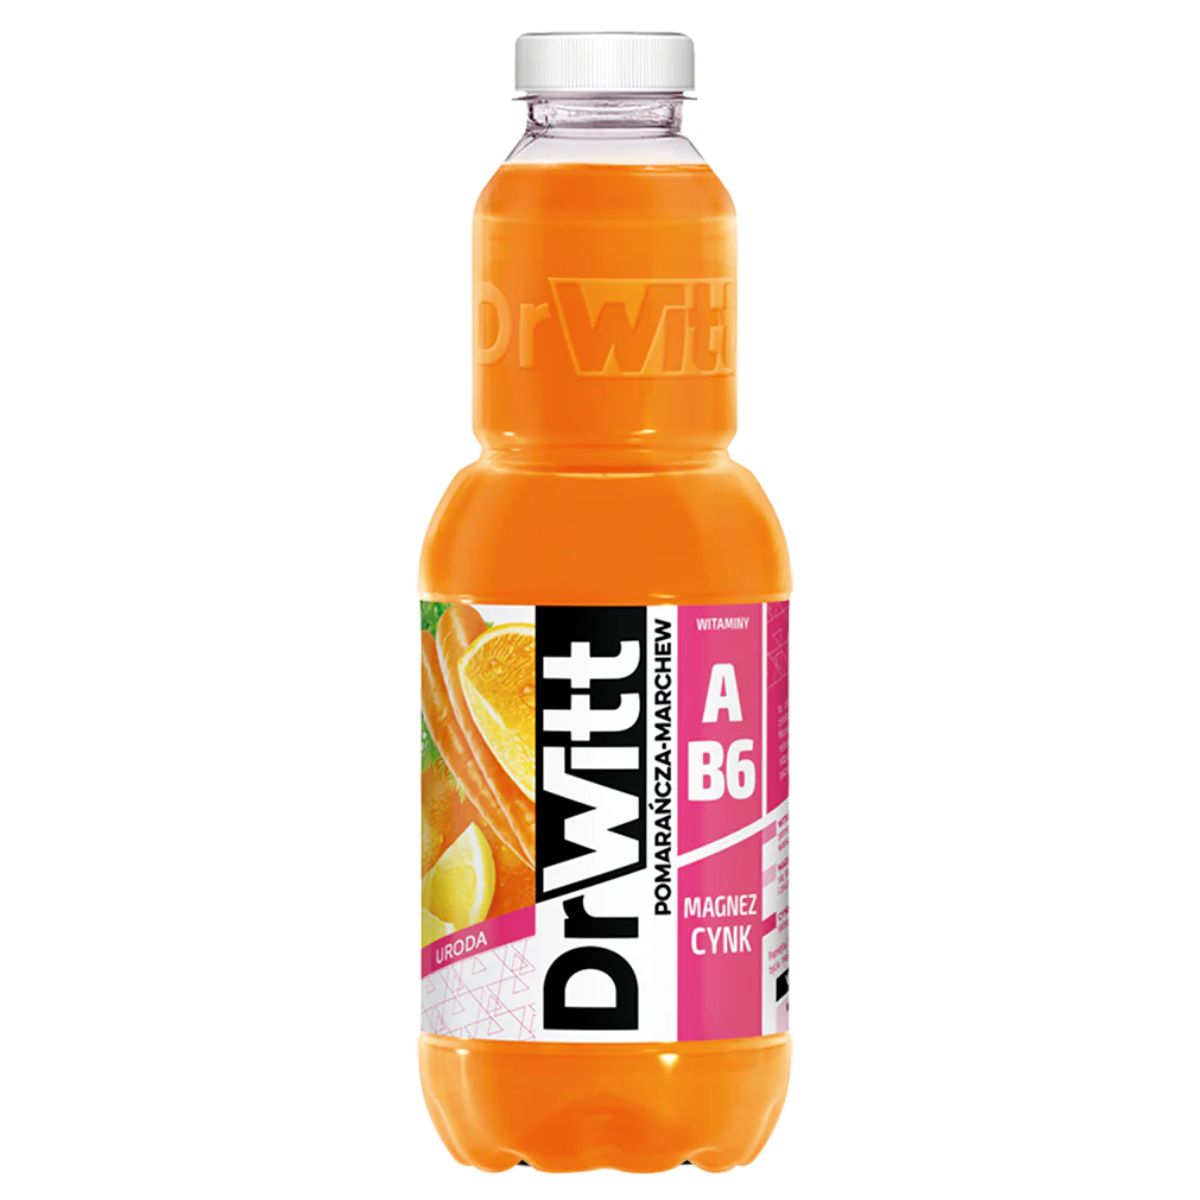 A bottle of Dr Witt - Orange Carrot & Lemon - 1 litre orange juice.